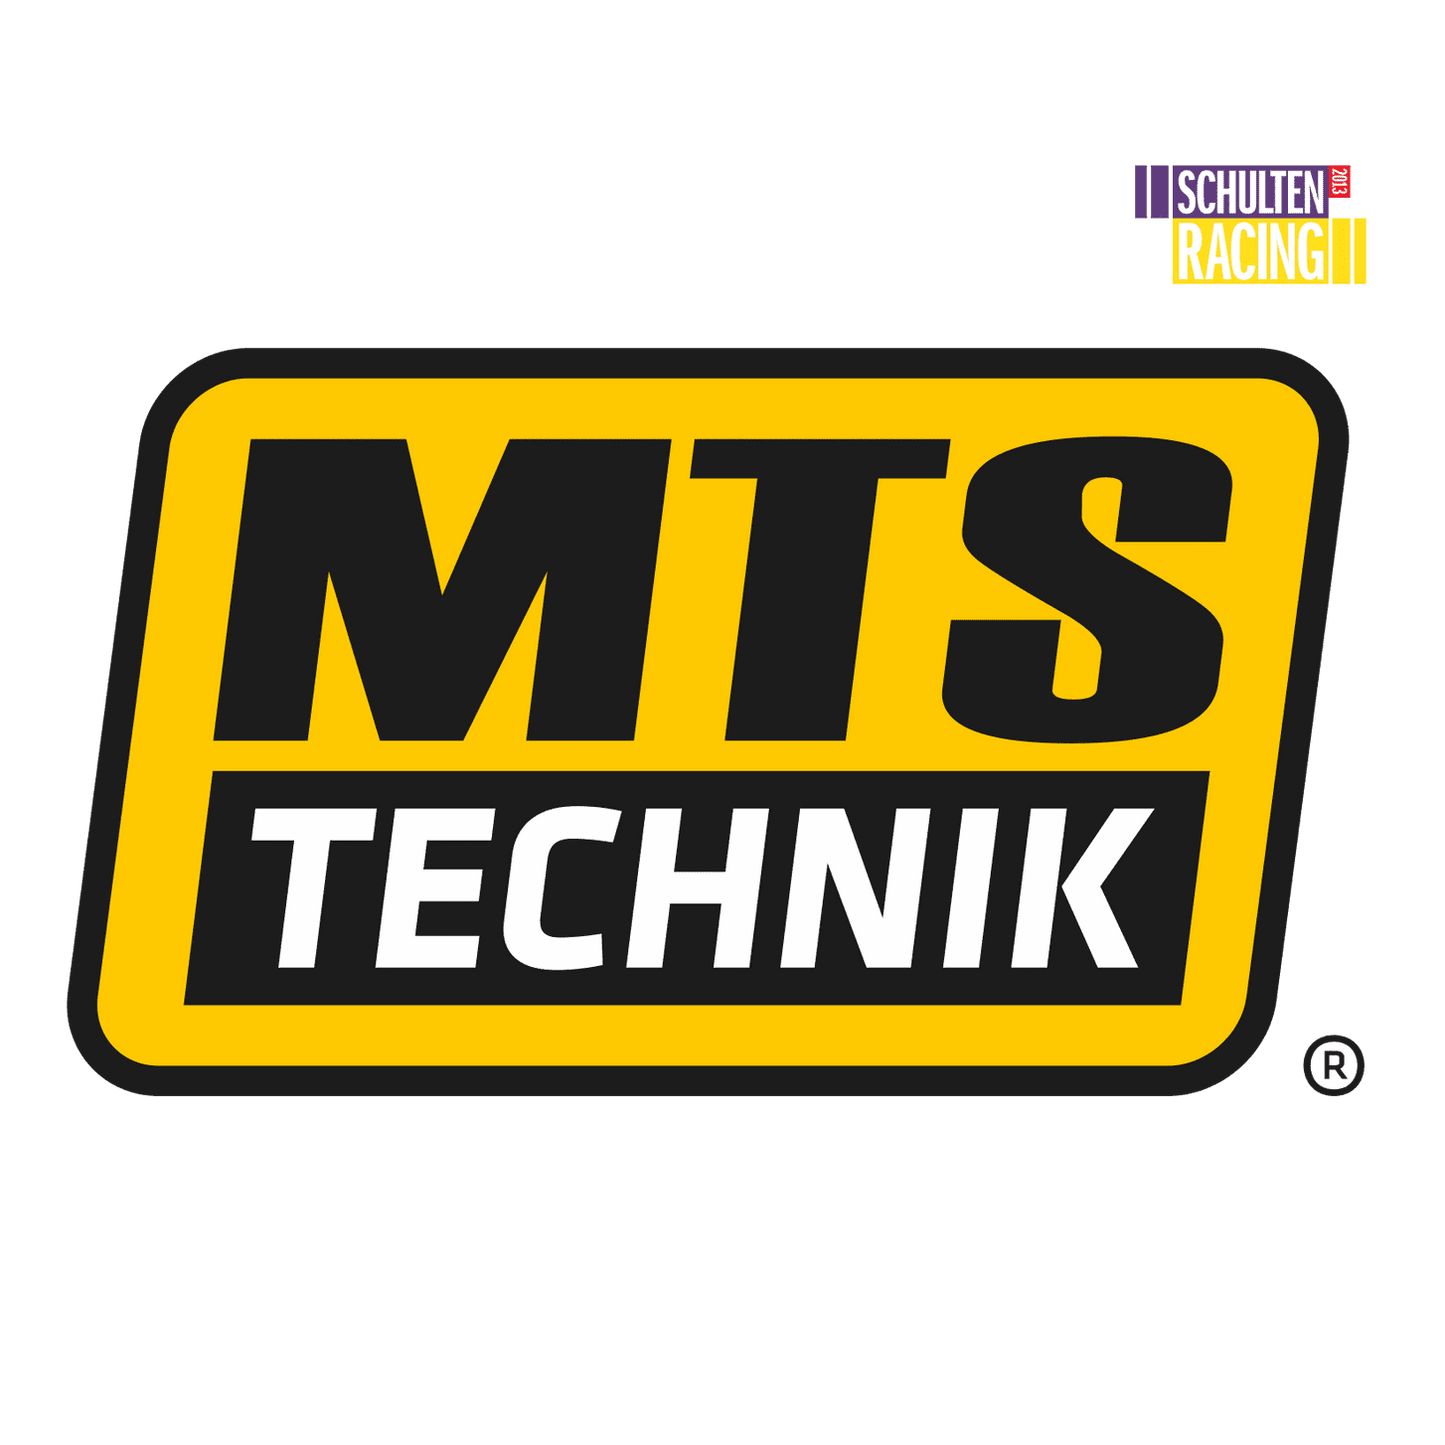 MTS TECHNIK Coilover Sport set BMW E30 - Premium Voertuigonderdelen en -accessoires Van MTS TECHNIK - Voor €799.00! Shop nu bij Schulten Racing Parts